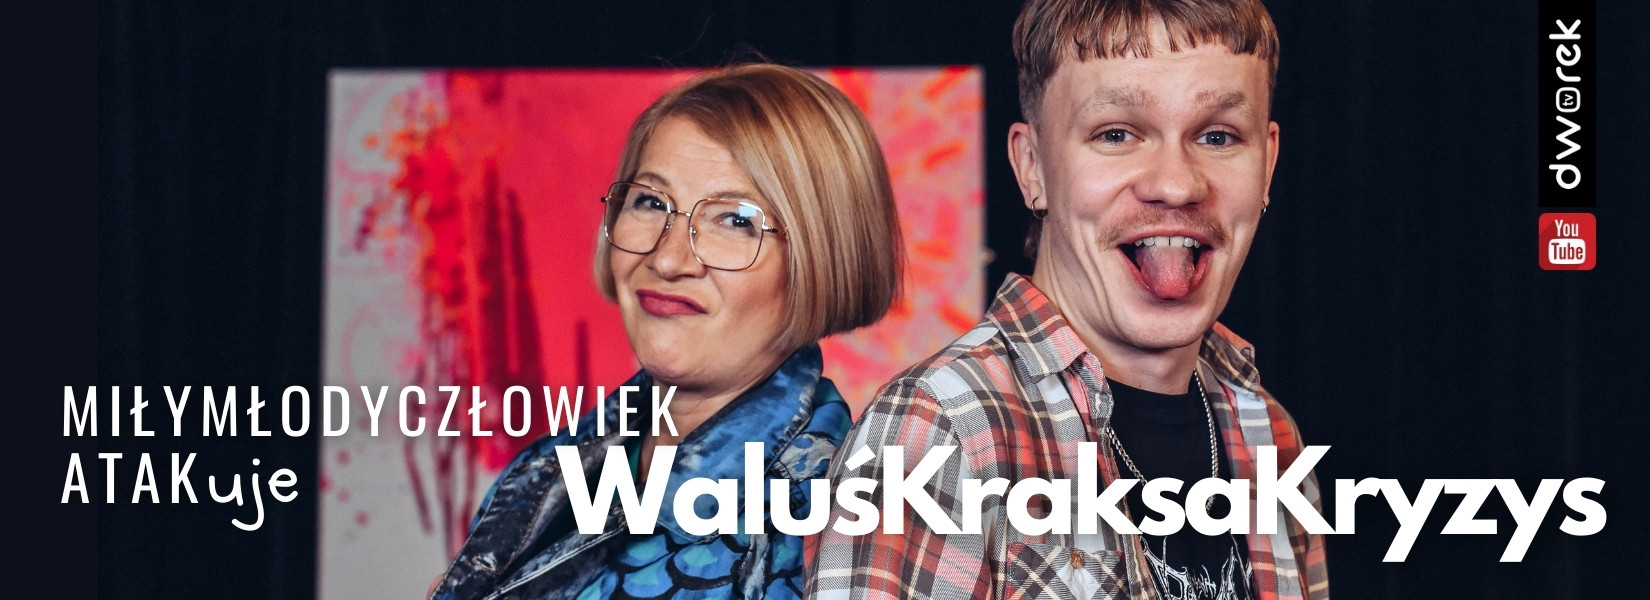 DWOREK TV | WaluśKraksaKryzys u Renaty Głowackiej